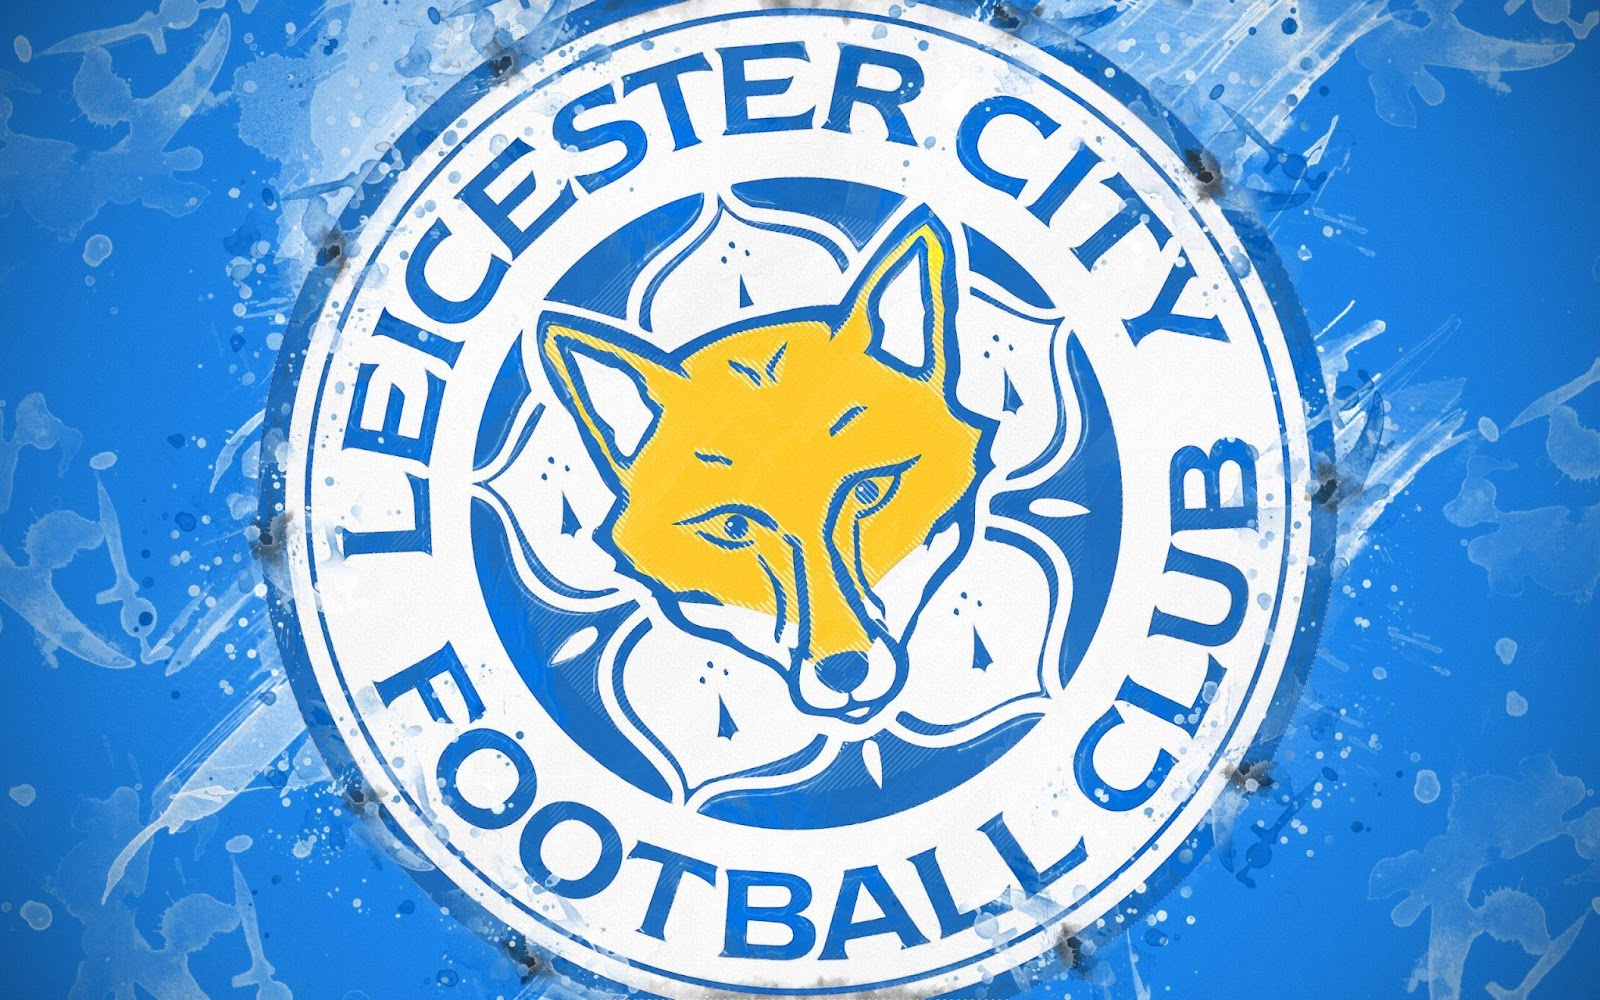 Thứ hạng của clb bóng đá Leicester City